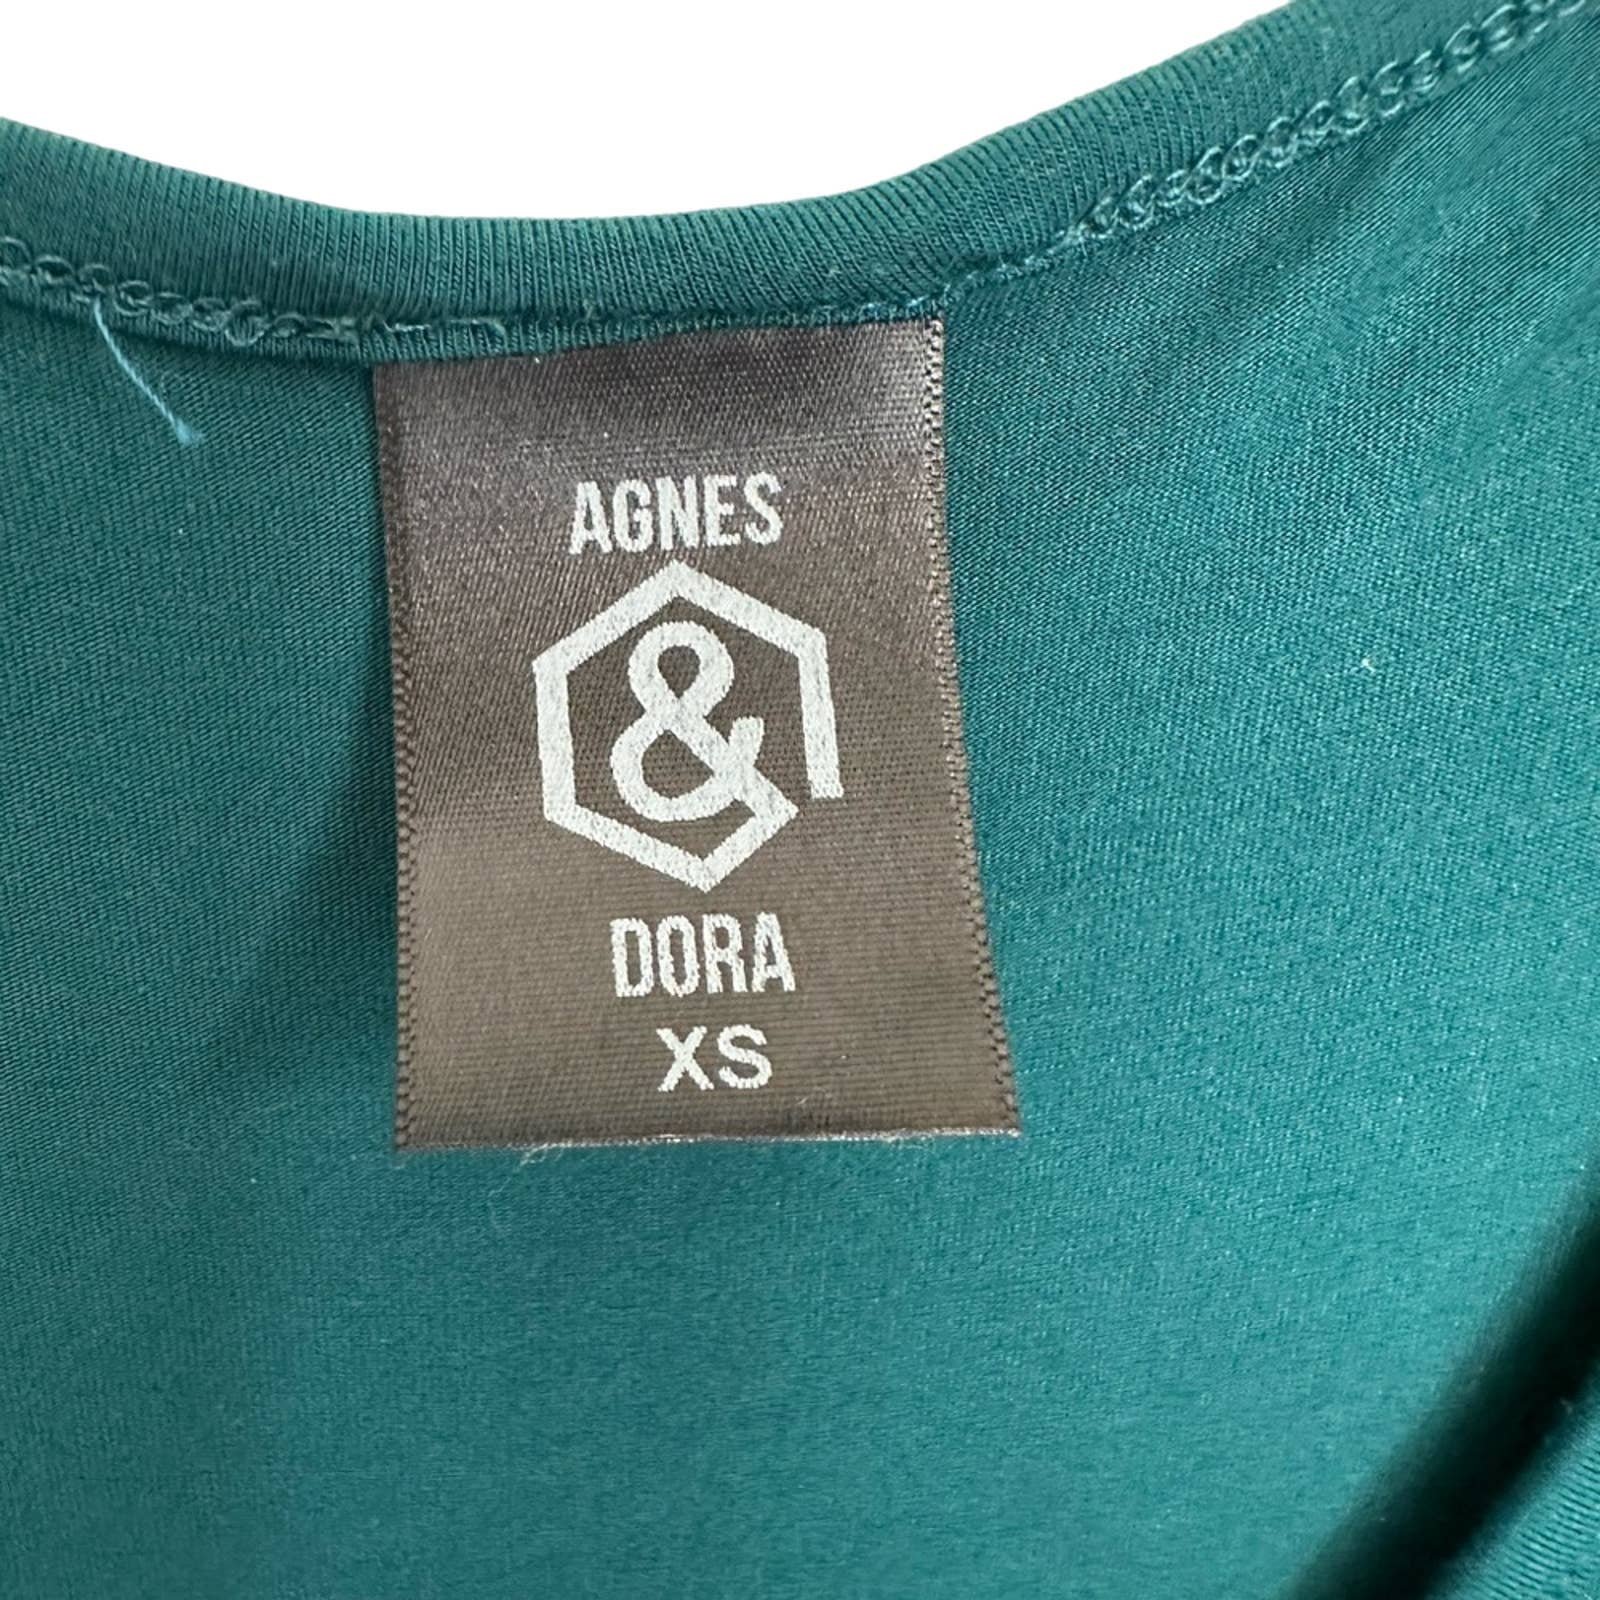 large selection Agnes & Dora Women tunic kSB0p0hM2 outlet online shop